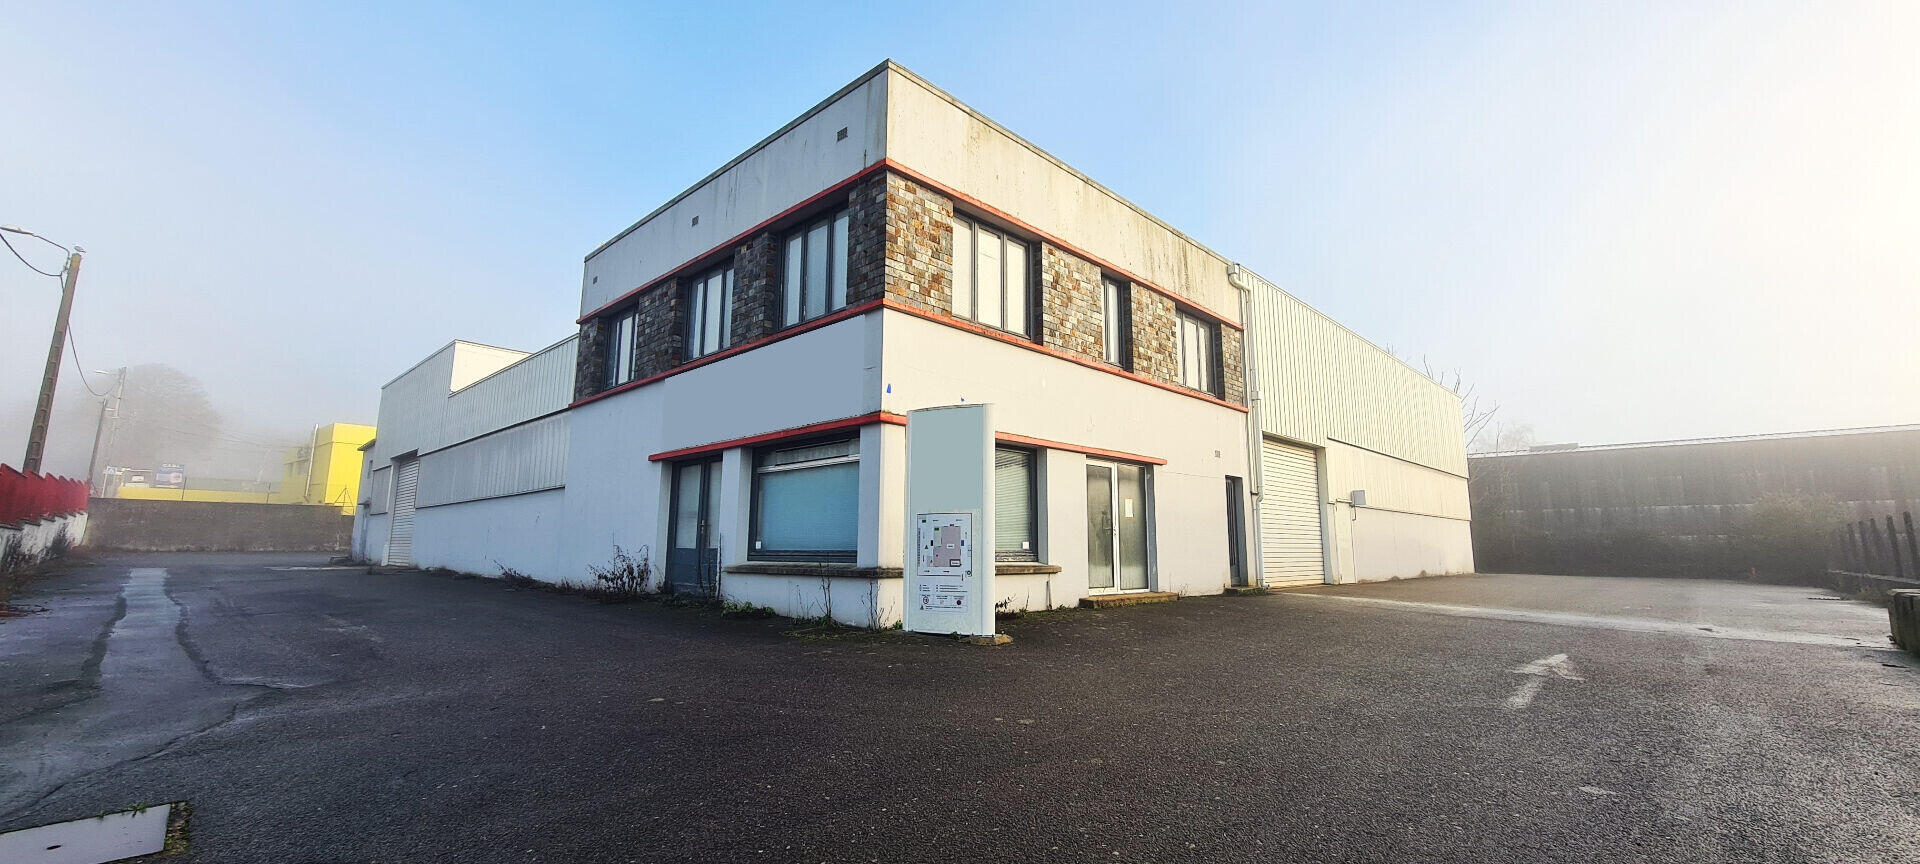 A louer local industriel bureaux 950m² à Quimper 